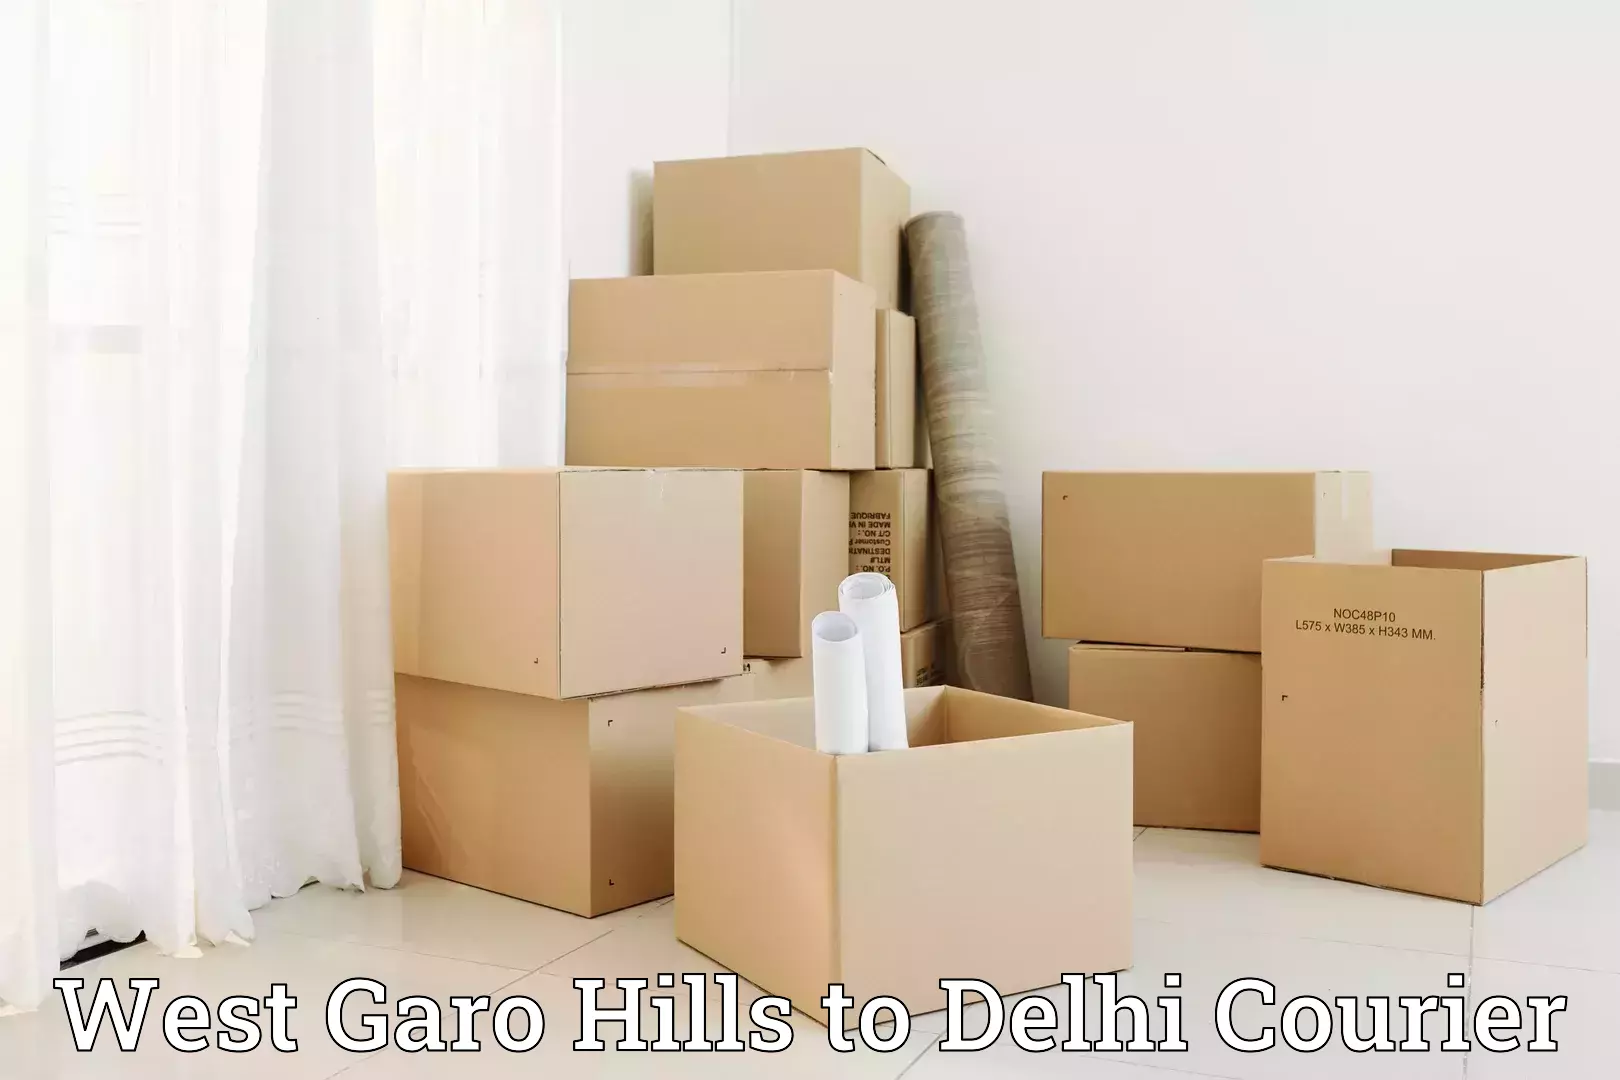 Furniture transport specialists West Garo Hills to Delhi